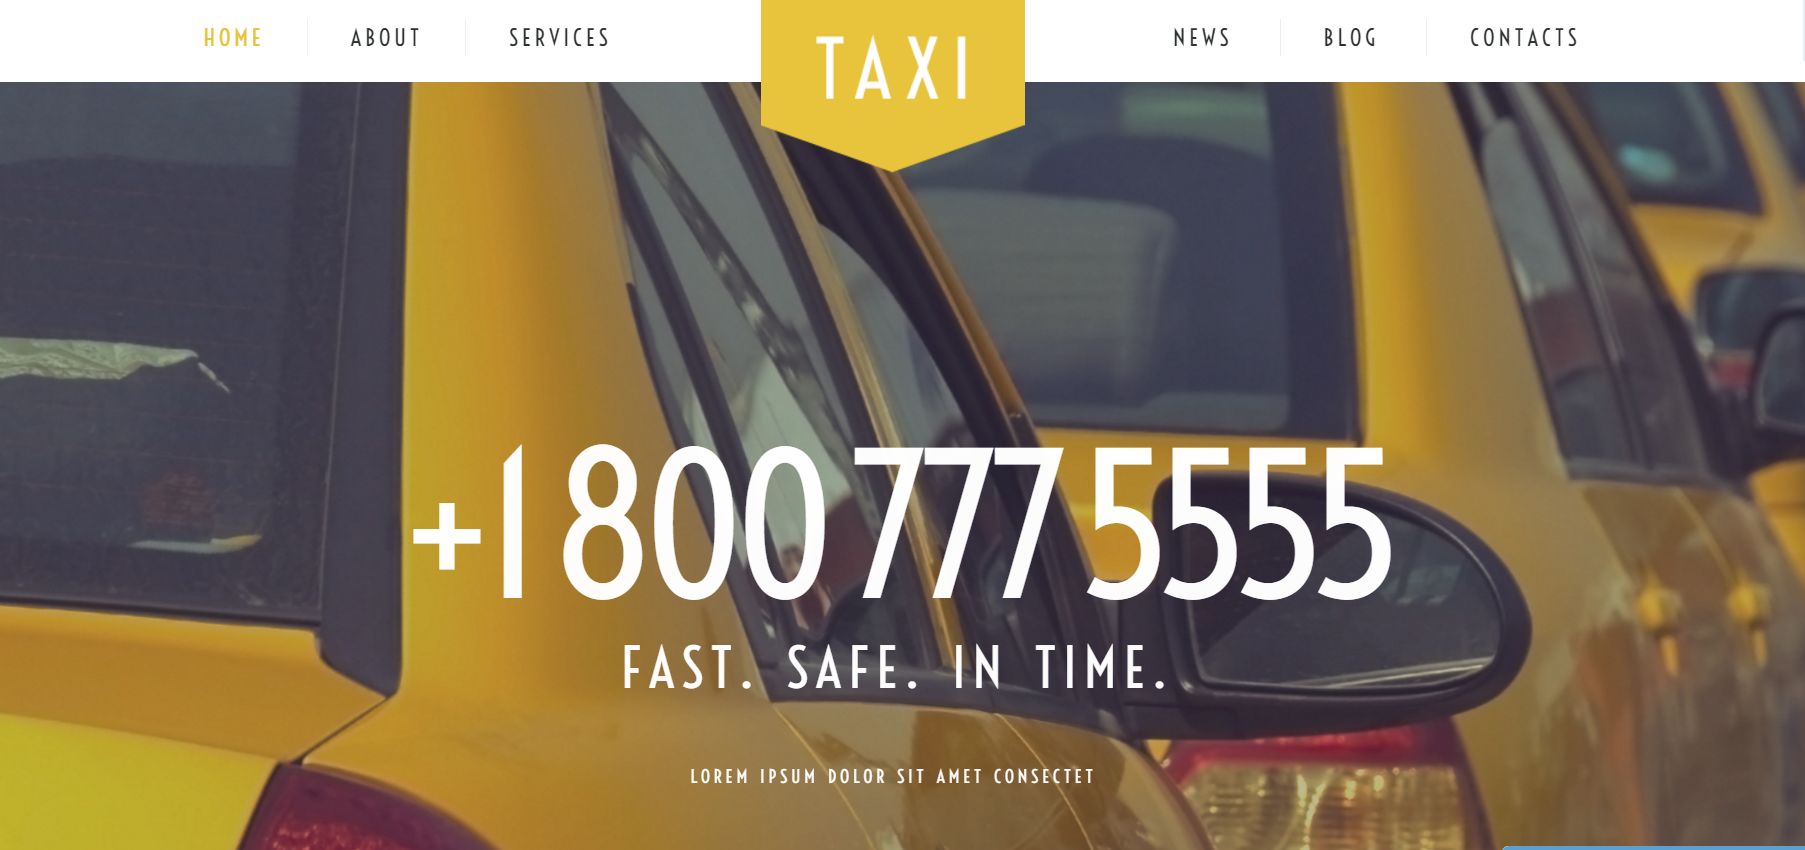 Taxi Services WordPress Theme